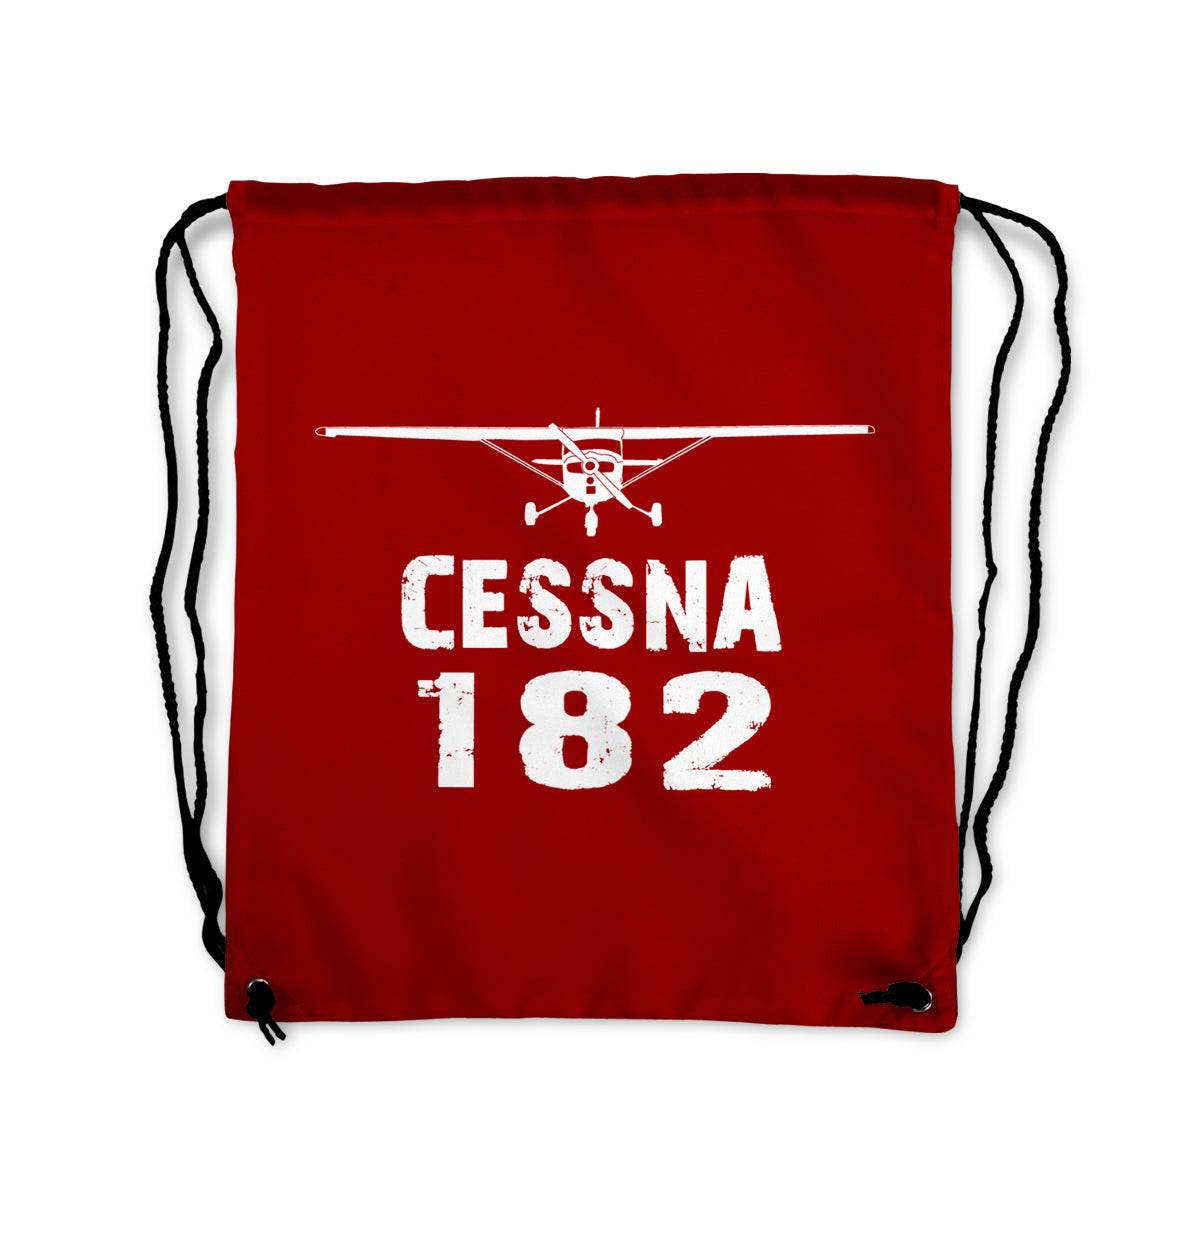 Cessna 182 & Plane Designed Drawstring Bags